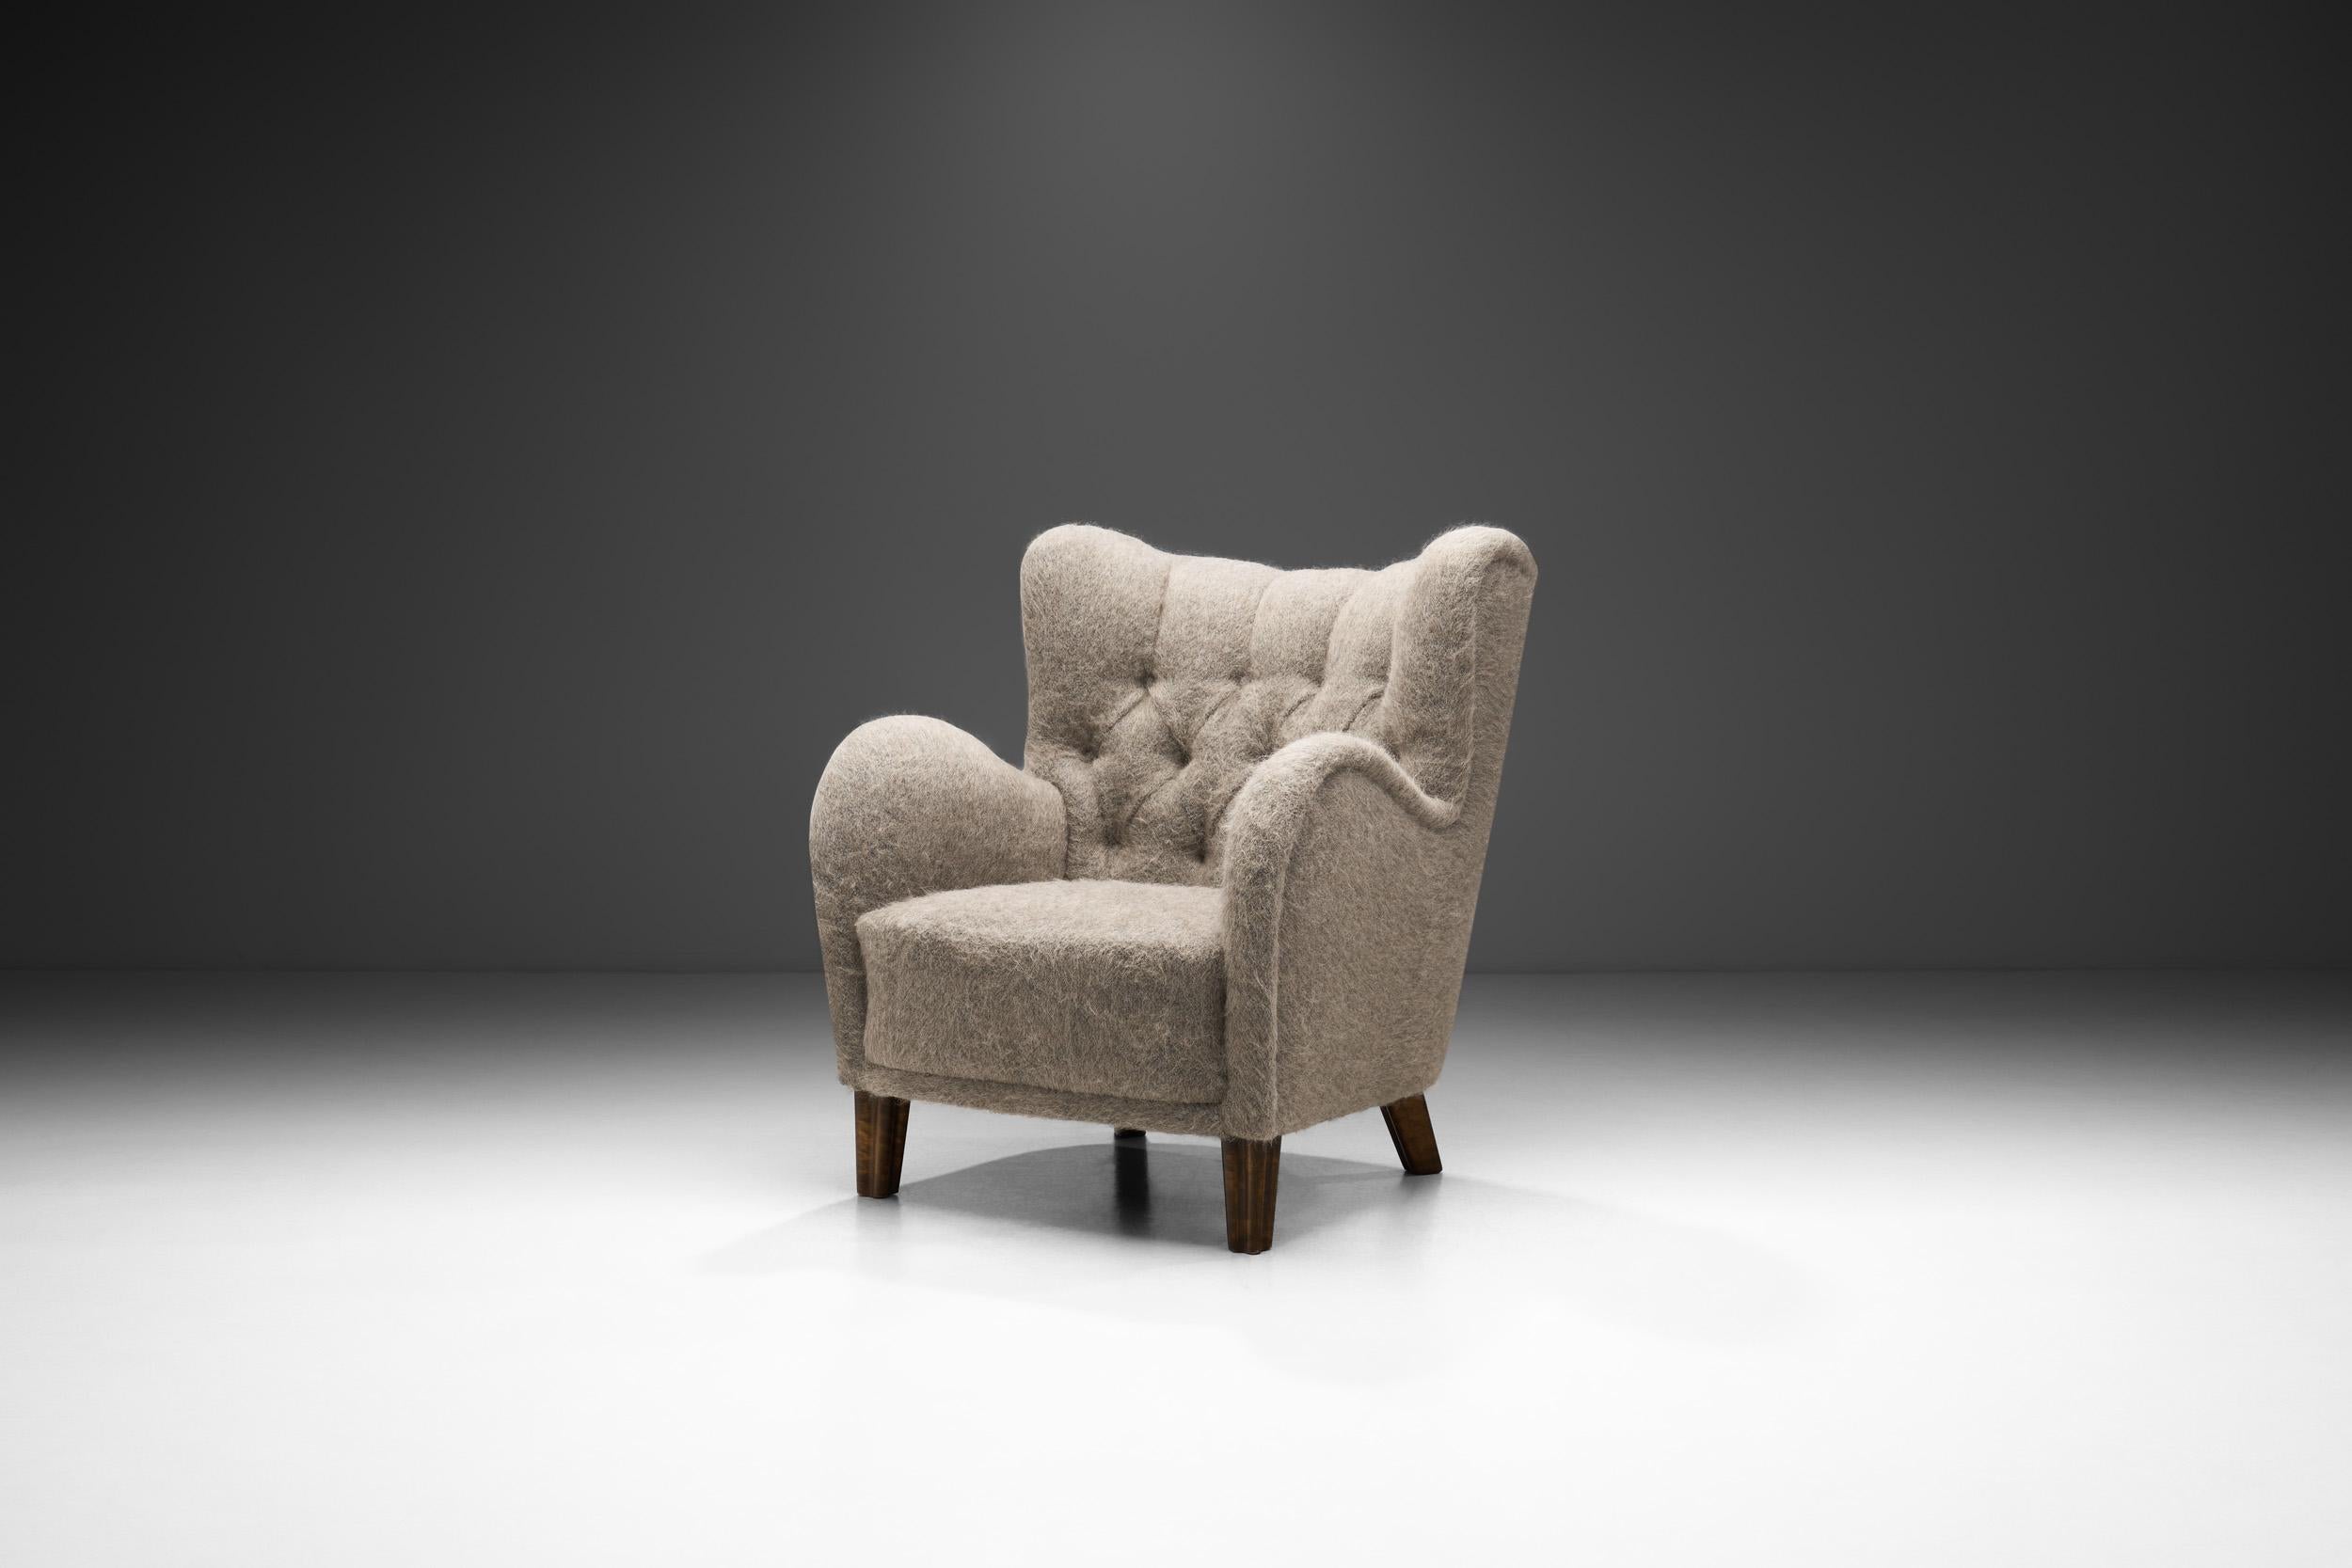 Ce magnifique fauteuil d'ébéniste européen rappelle l'apogée du design moderne du milieu du siècle sur le continent. Les ébénistes ont ouvert la voie à la conception de meubles dans les années 1950, en combinant l'inspiration apportée par les